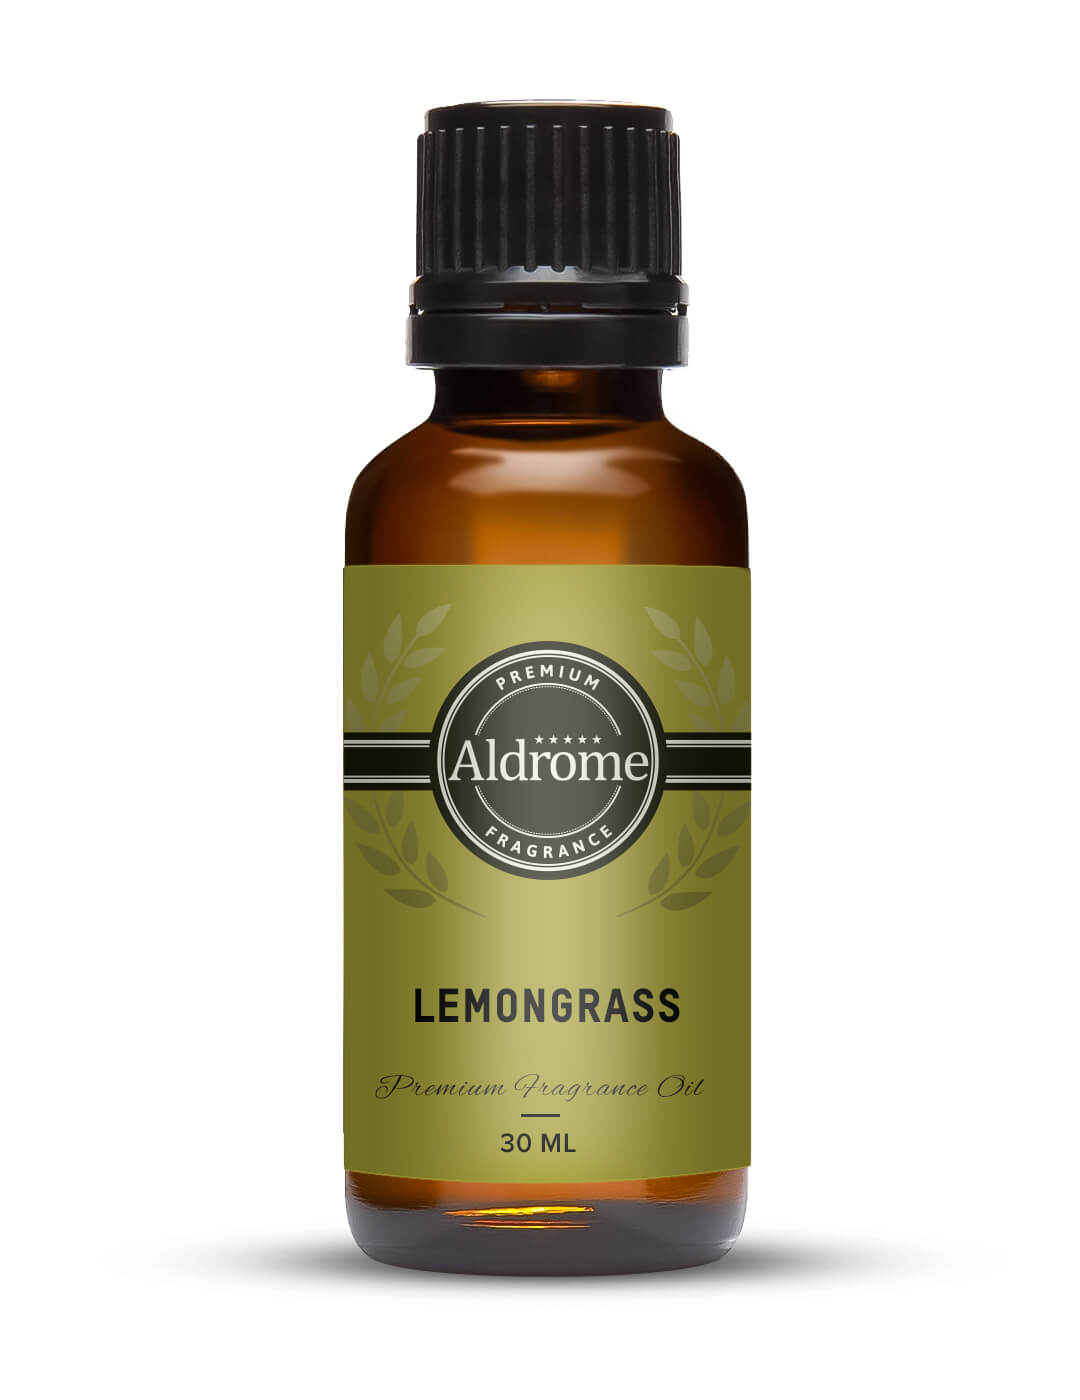 Buy Lemongrass Fragrance Oil - 30ml at Best price | Aldrome Premium Fragrance Oil